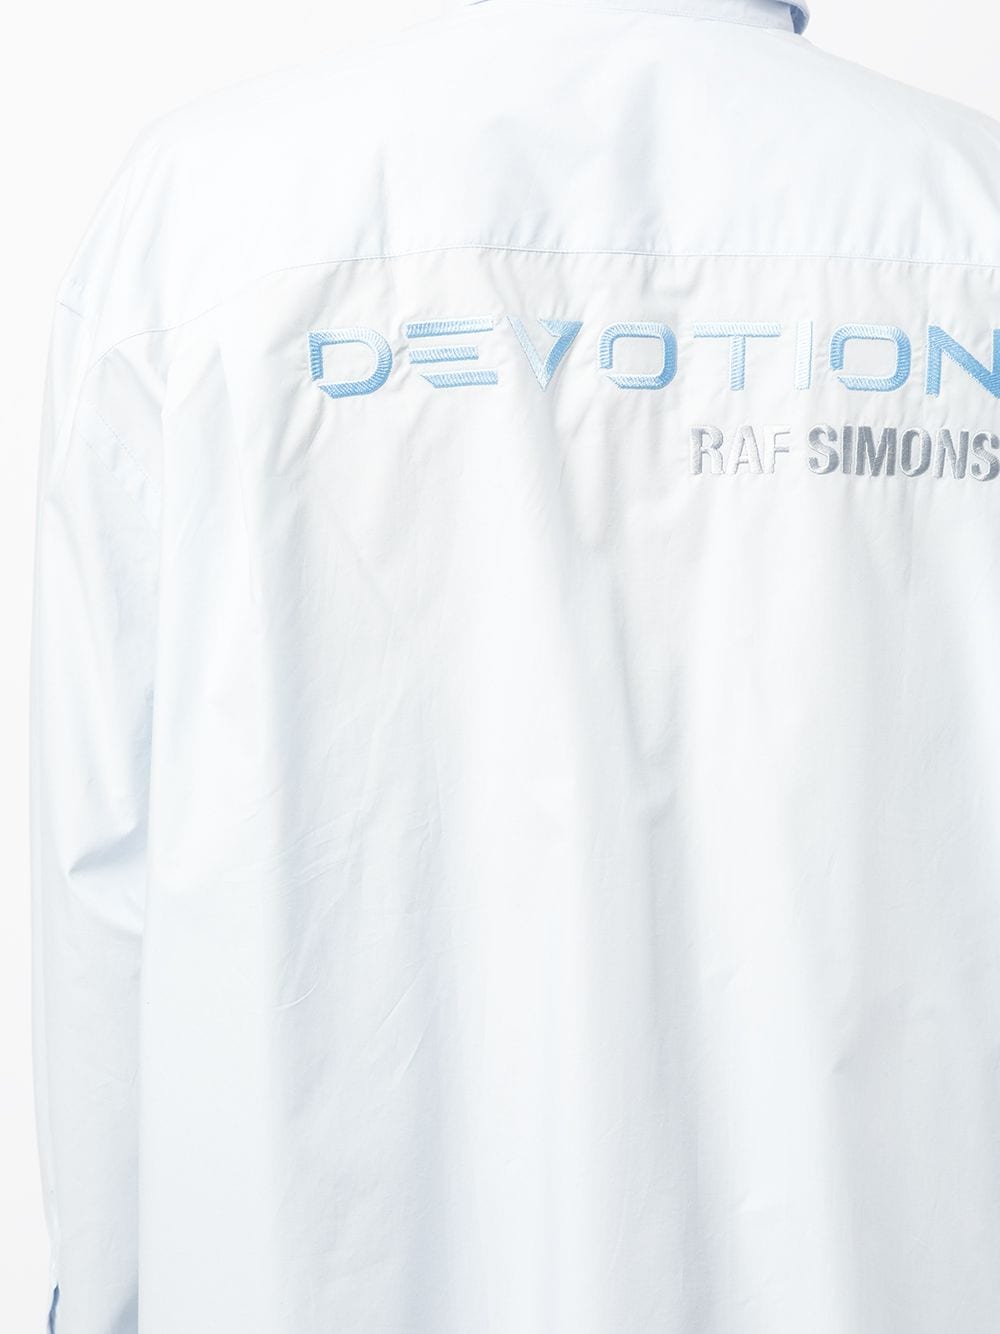 фото Raf simons рубашка на пуговицах с логотипом